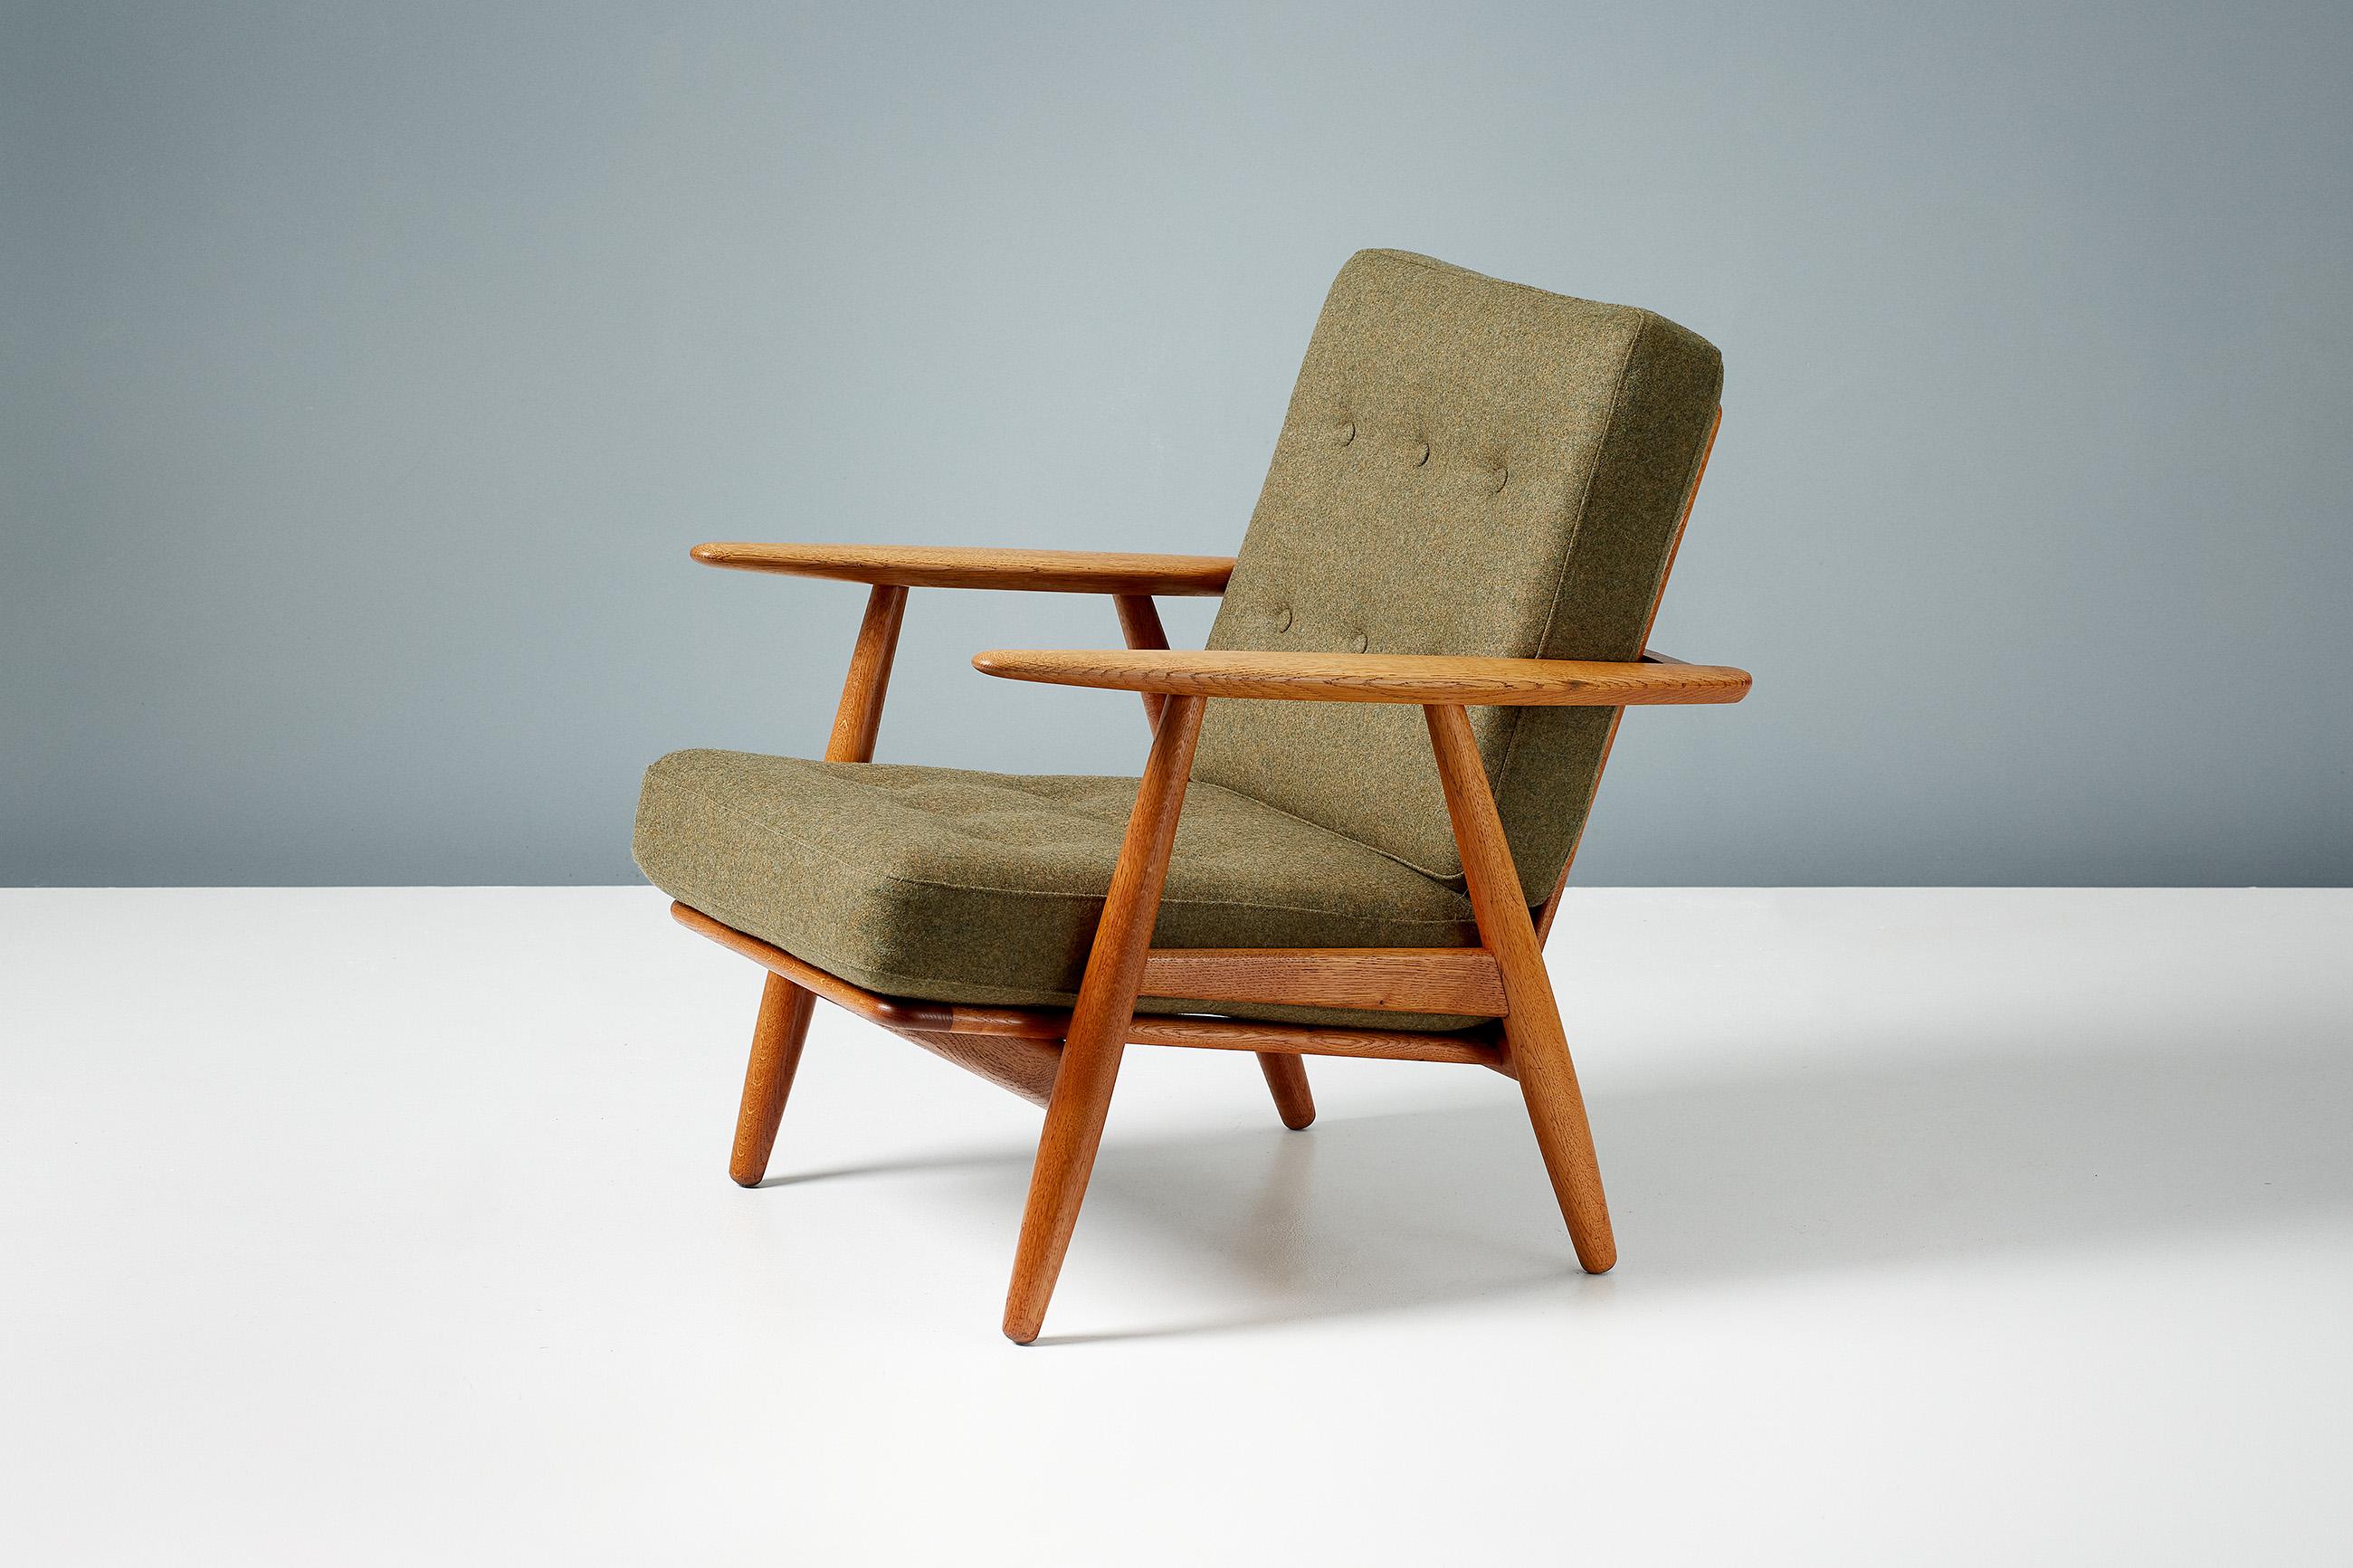 Hans J. Wegner

Paire de chaises cigares GE-240, 1955

Produit par GETAMA à Gedsted, au Danemark, dans les années 1950. Ces exemplaires de la chaise longue emblématique de Wegner sont fabriqués à partir d'une structure en chêne européen et les